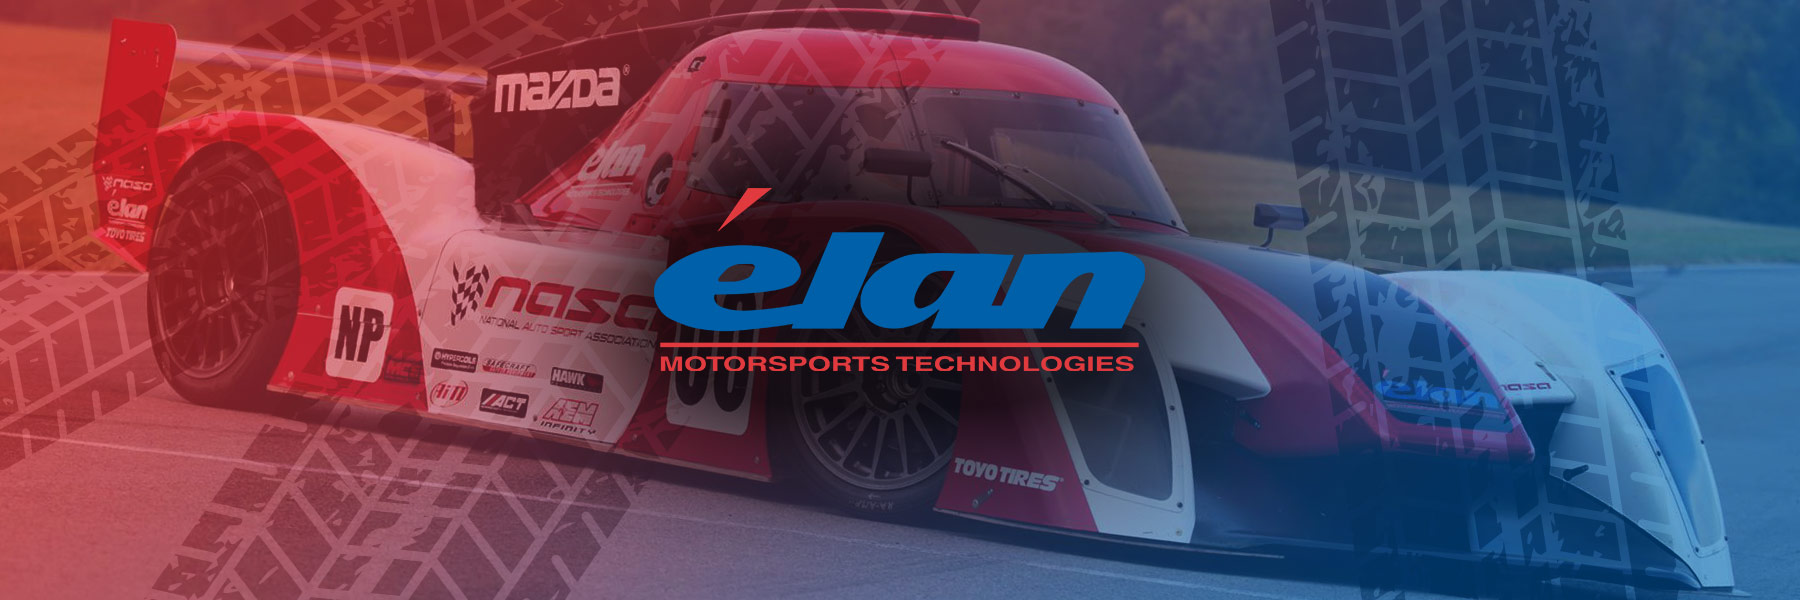 Elan Motorsports